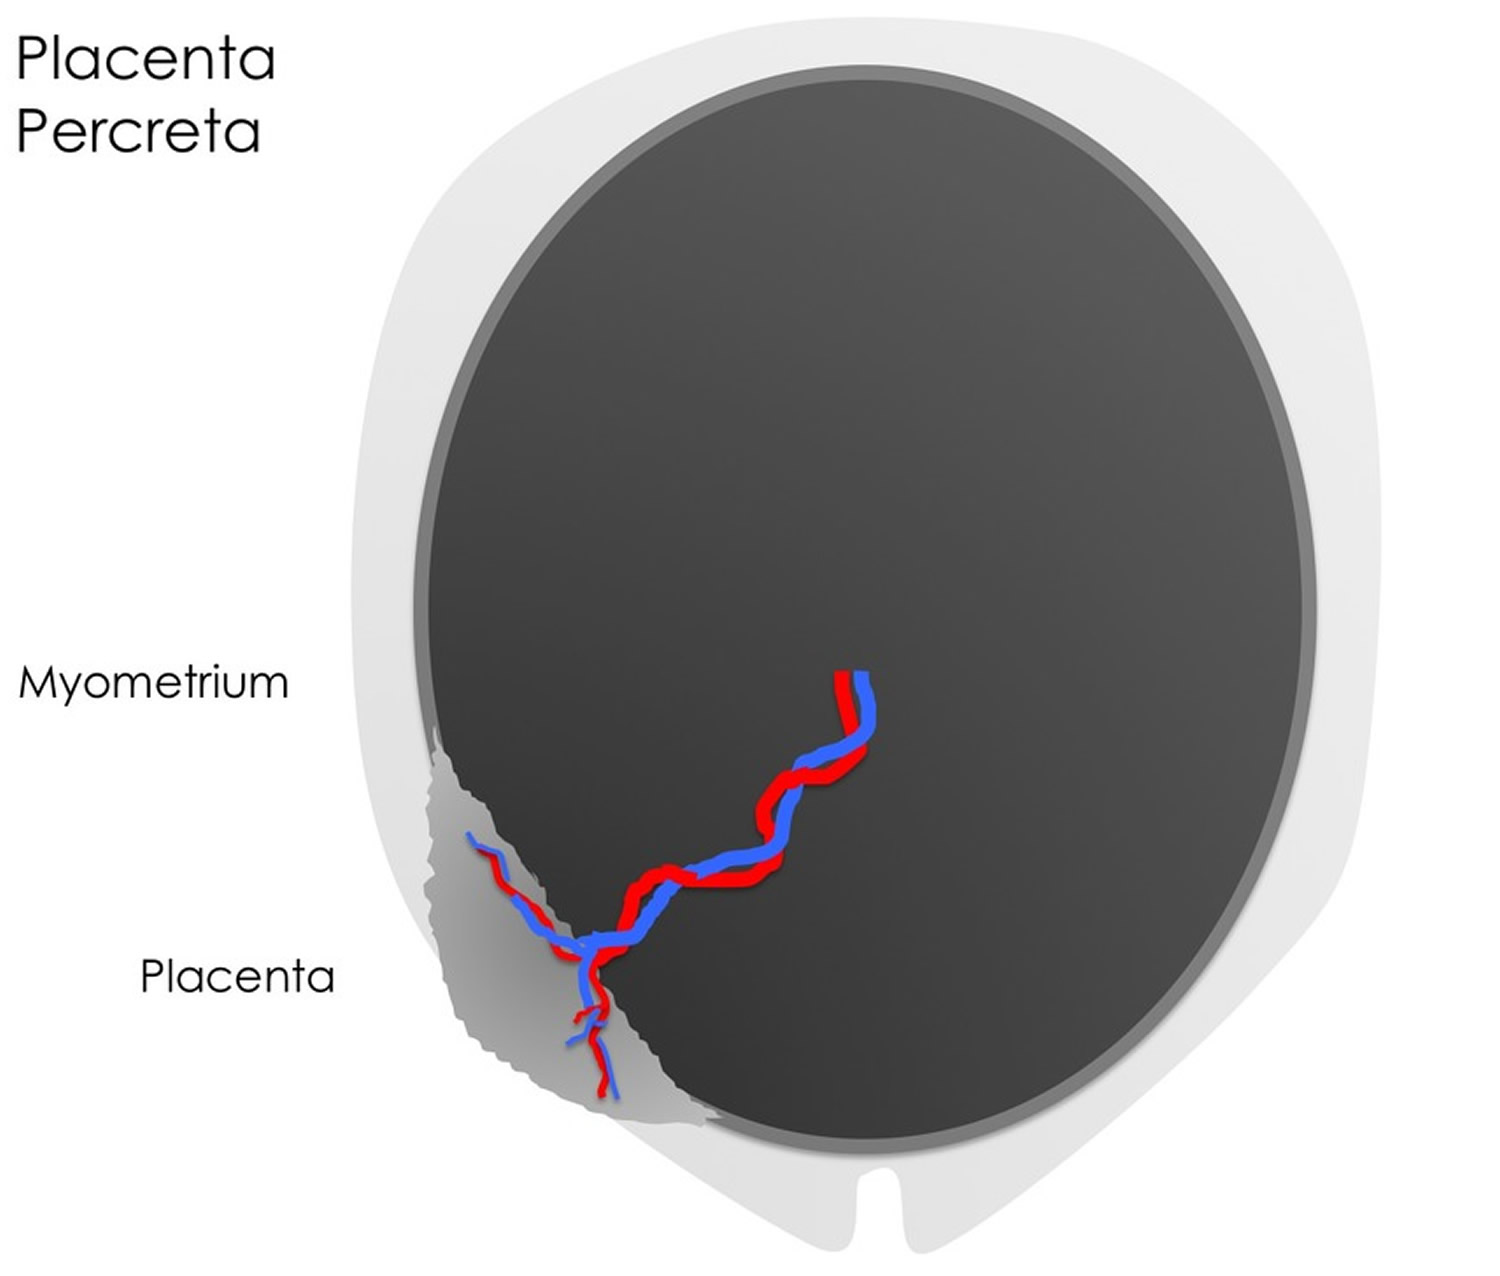 Placenta percreta